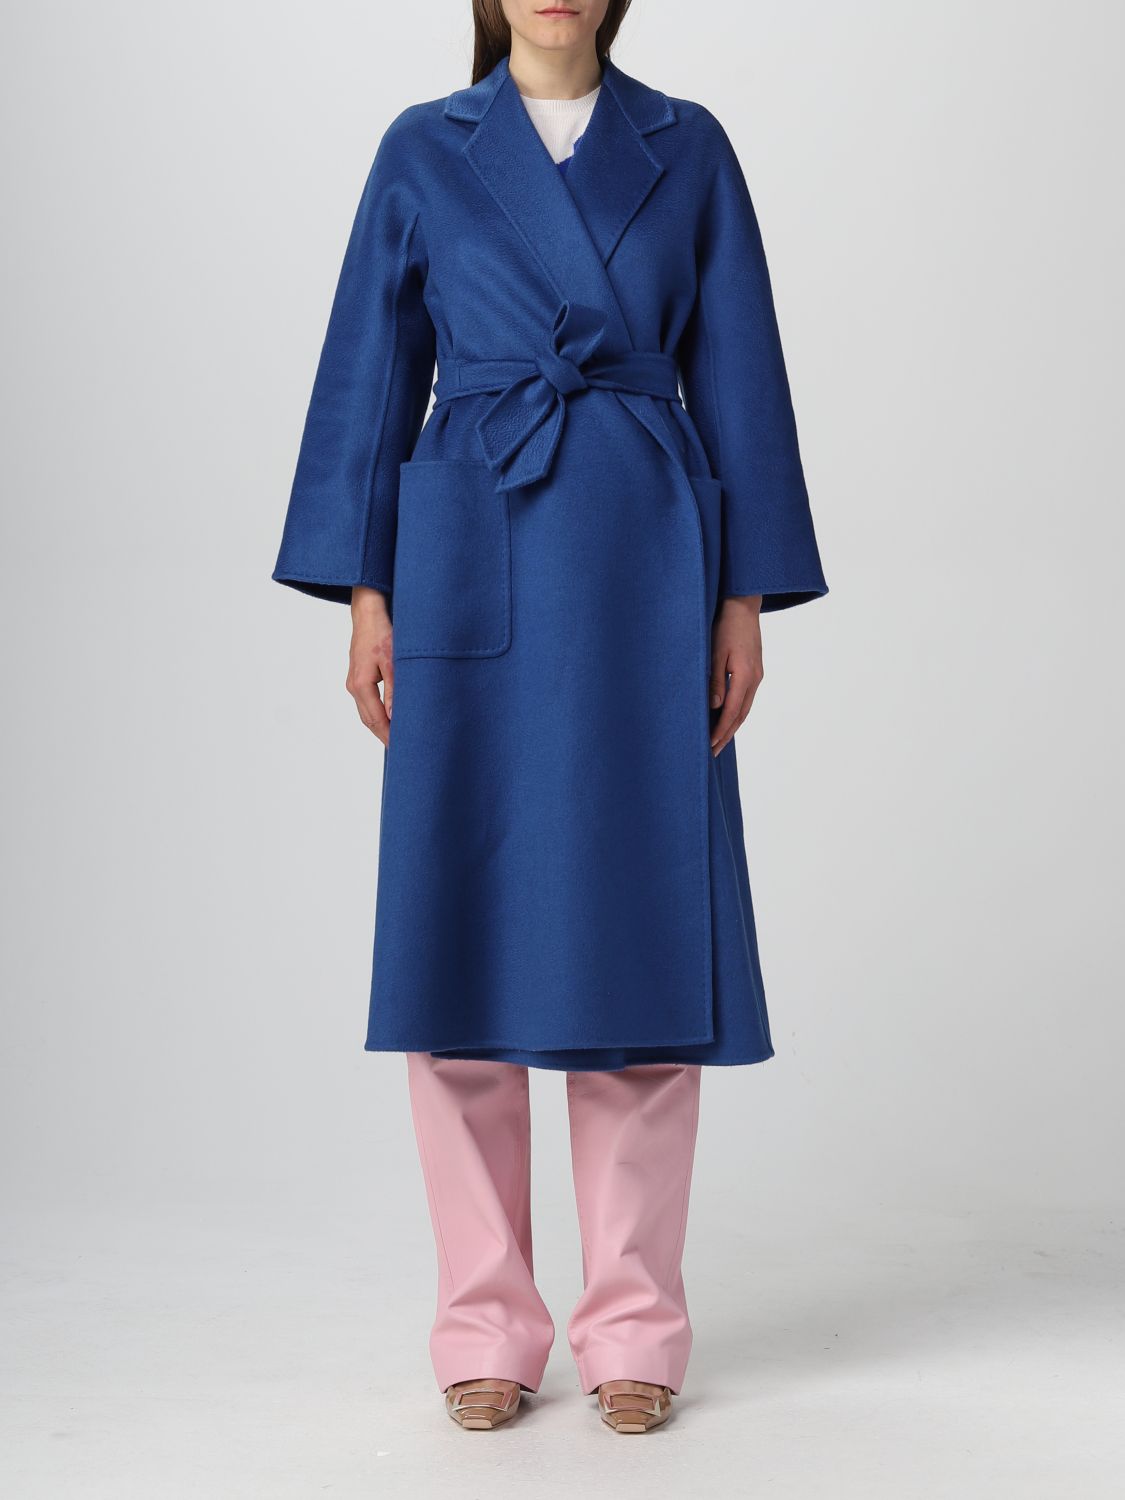 MAX MARA: cashmere coat - Blue | Max Mara coat 2310110831600 online on ...